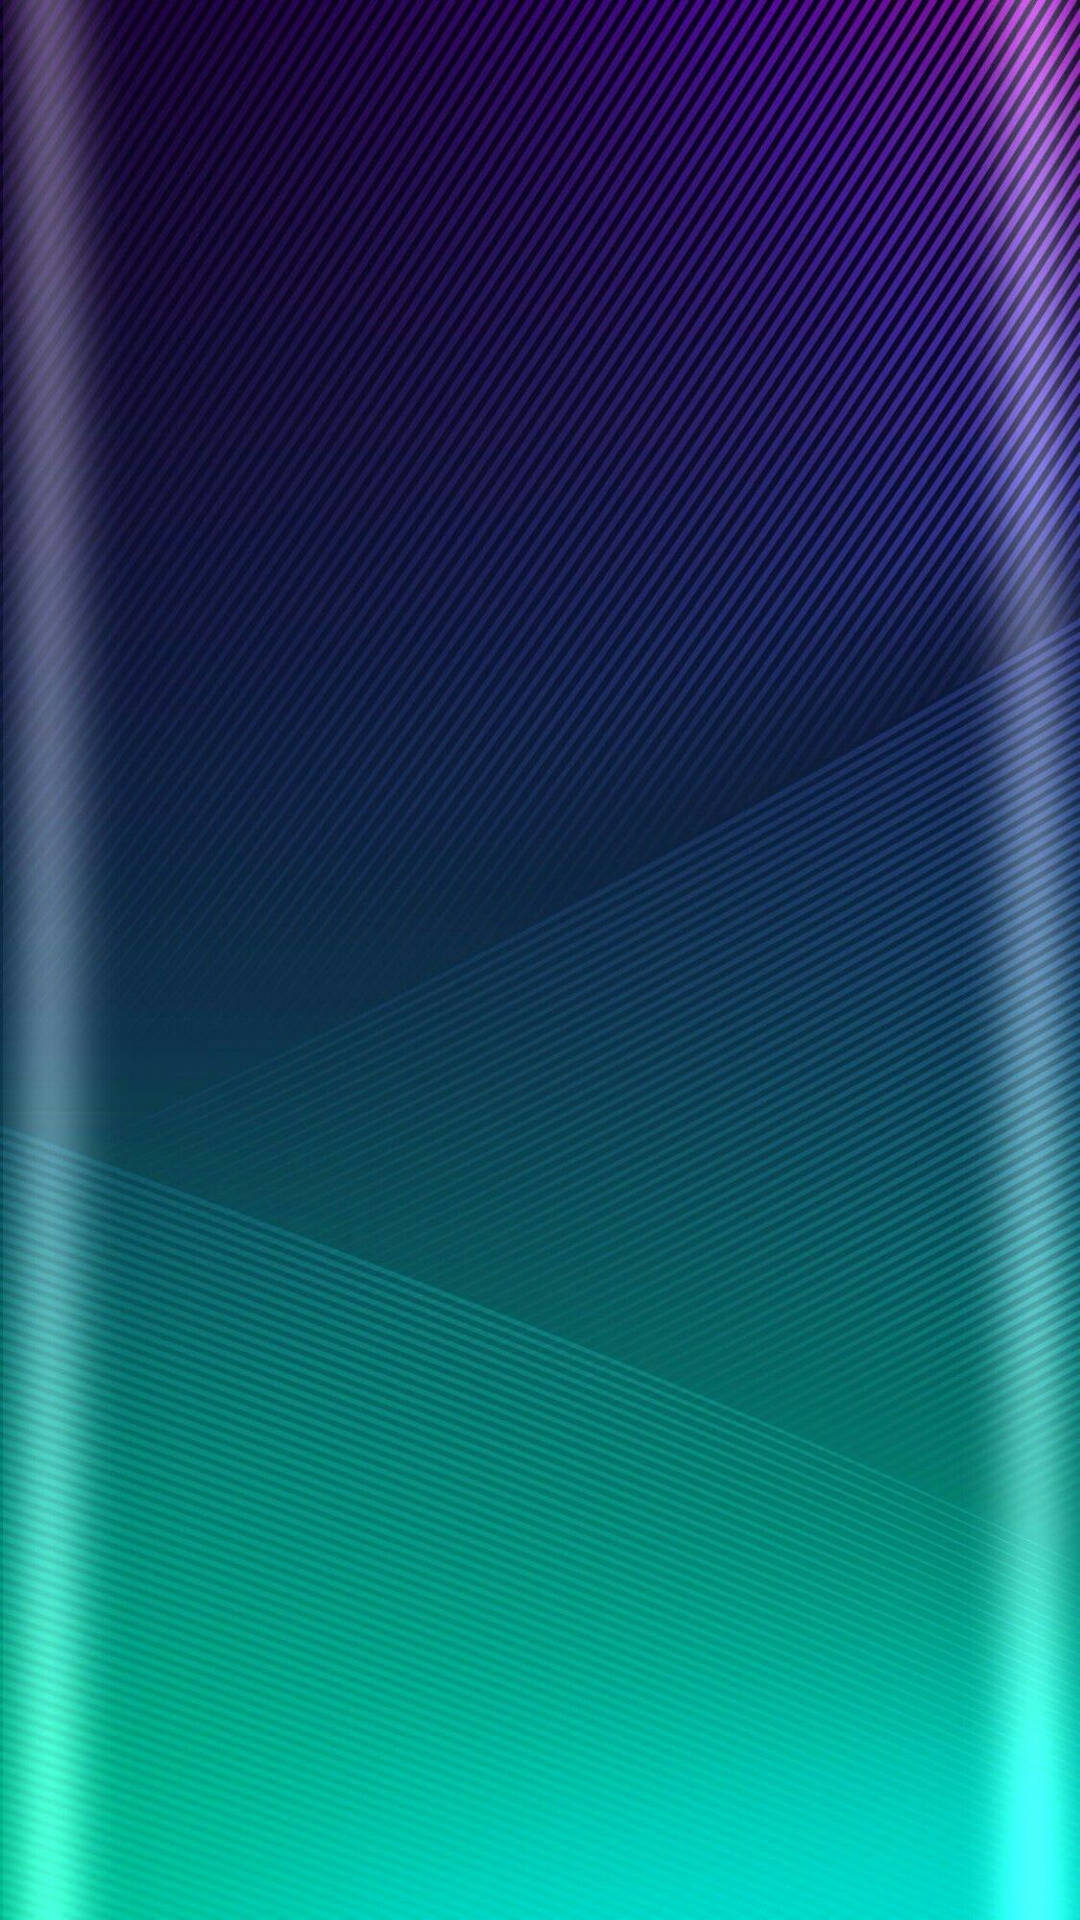 Sleek Samsung Edge Home Screen Background